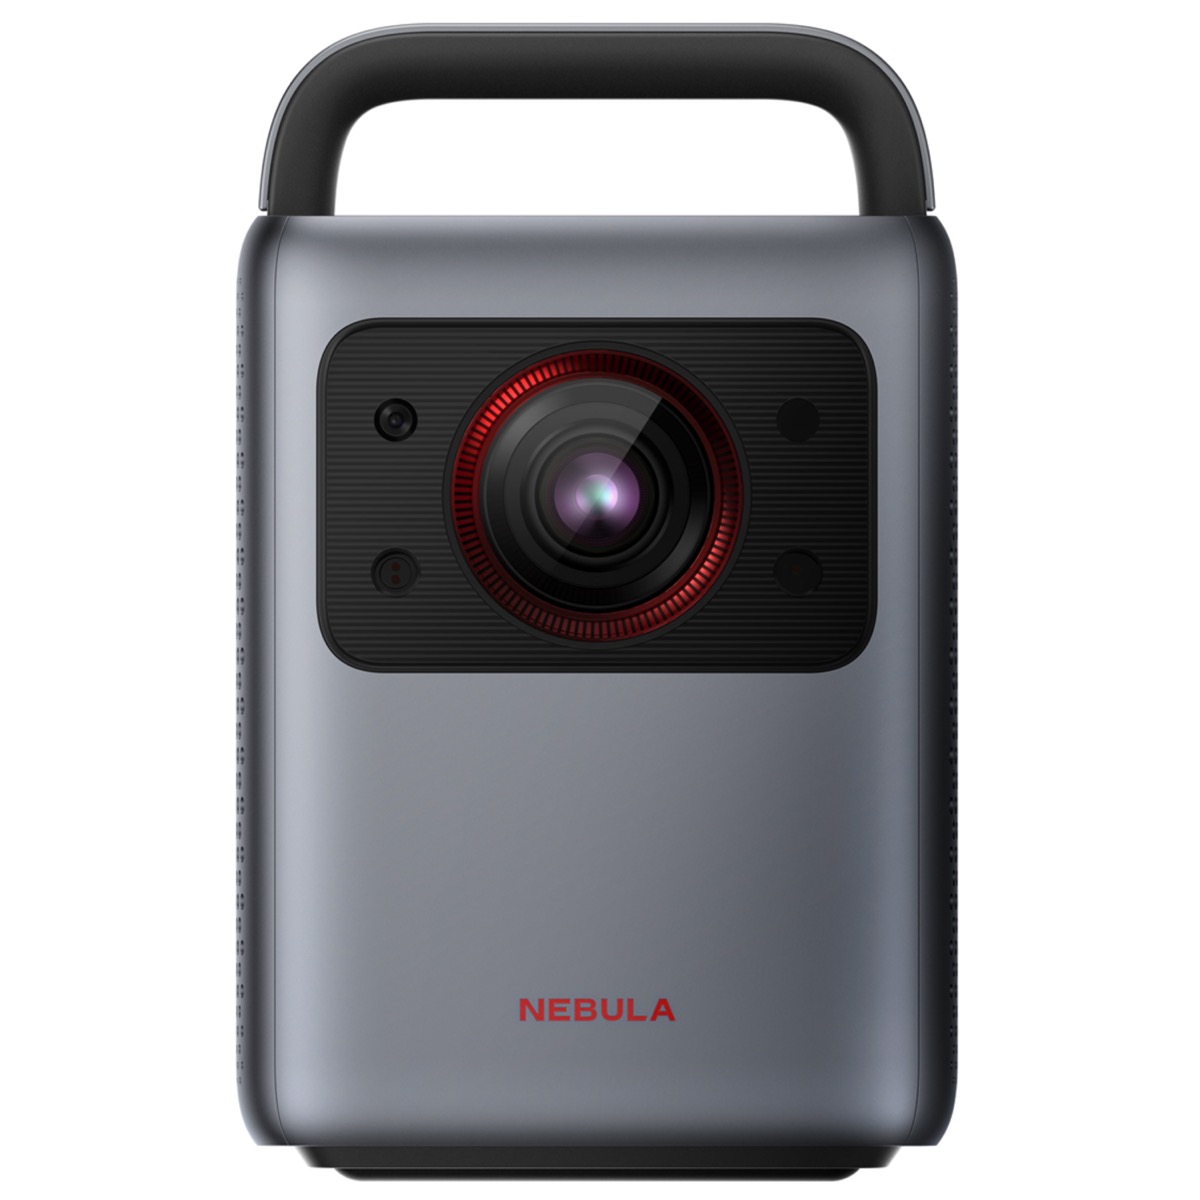 Anker presenta una nuova webcam e un proiettore portatile 4K